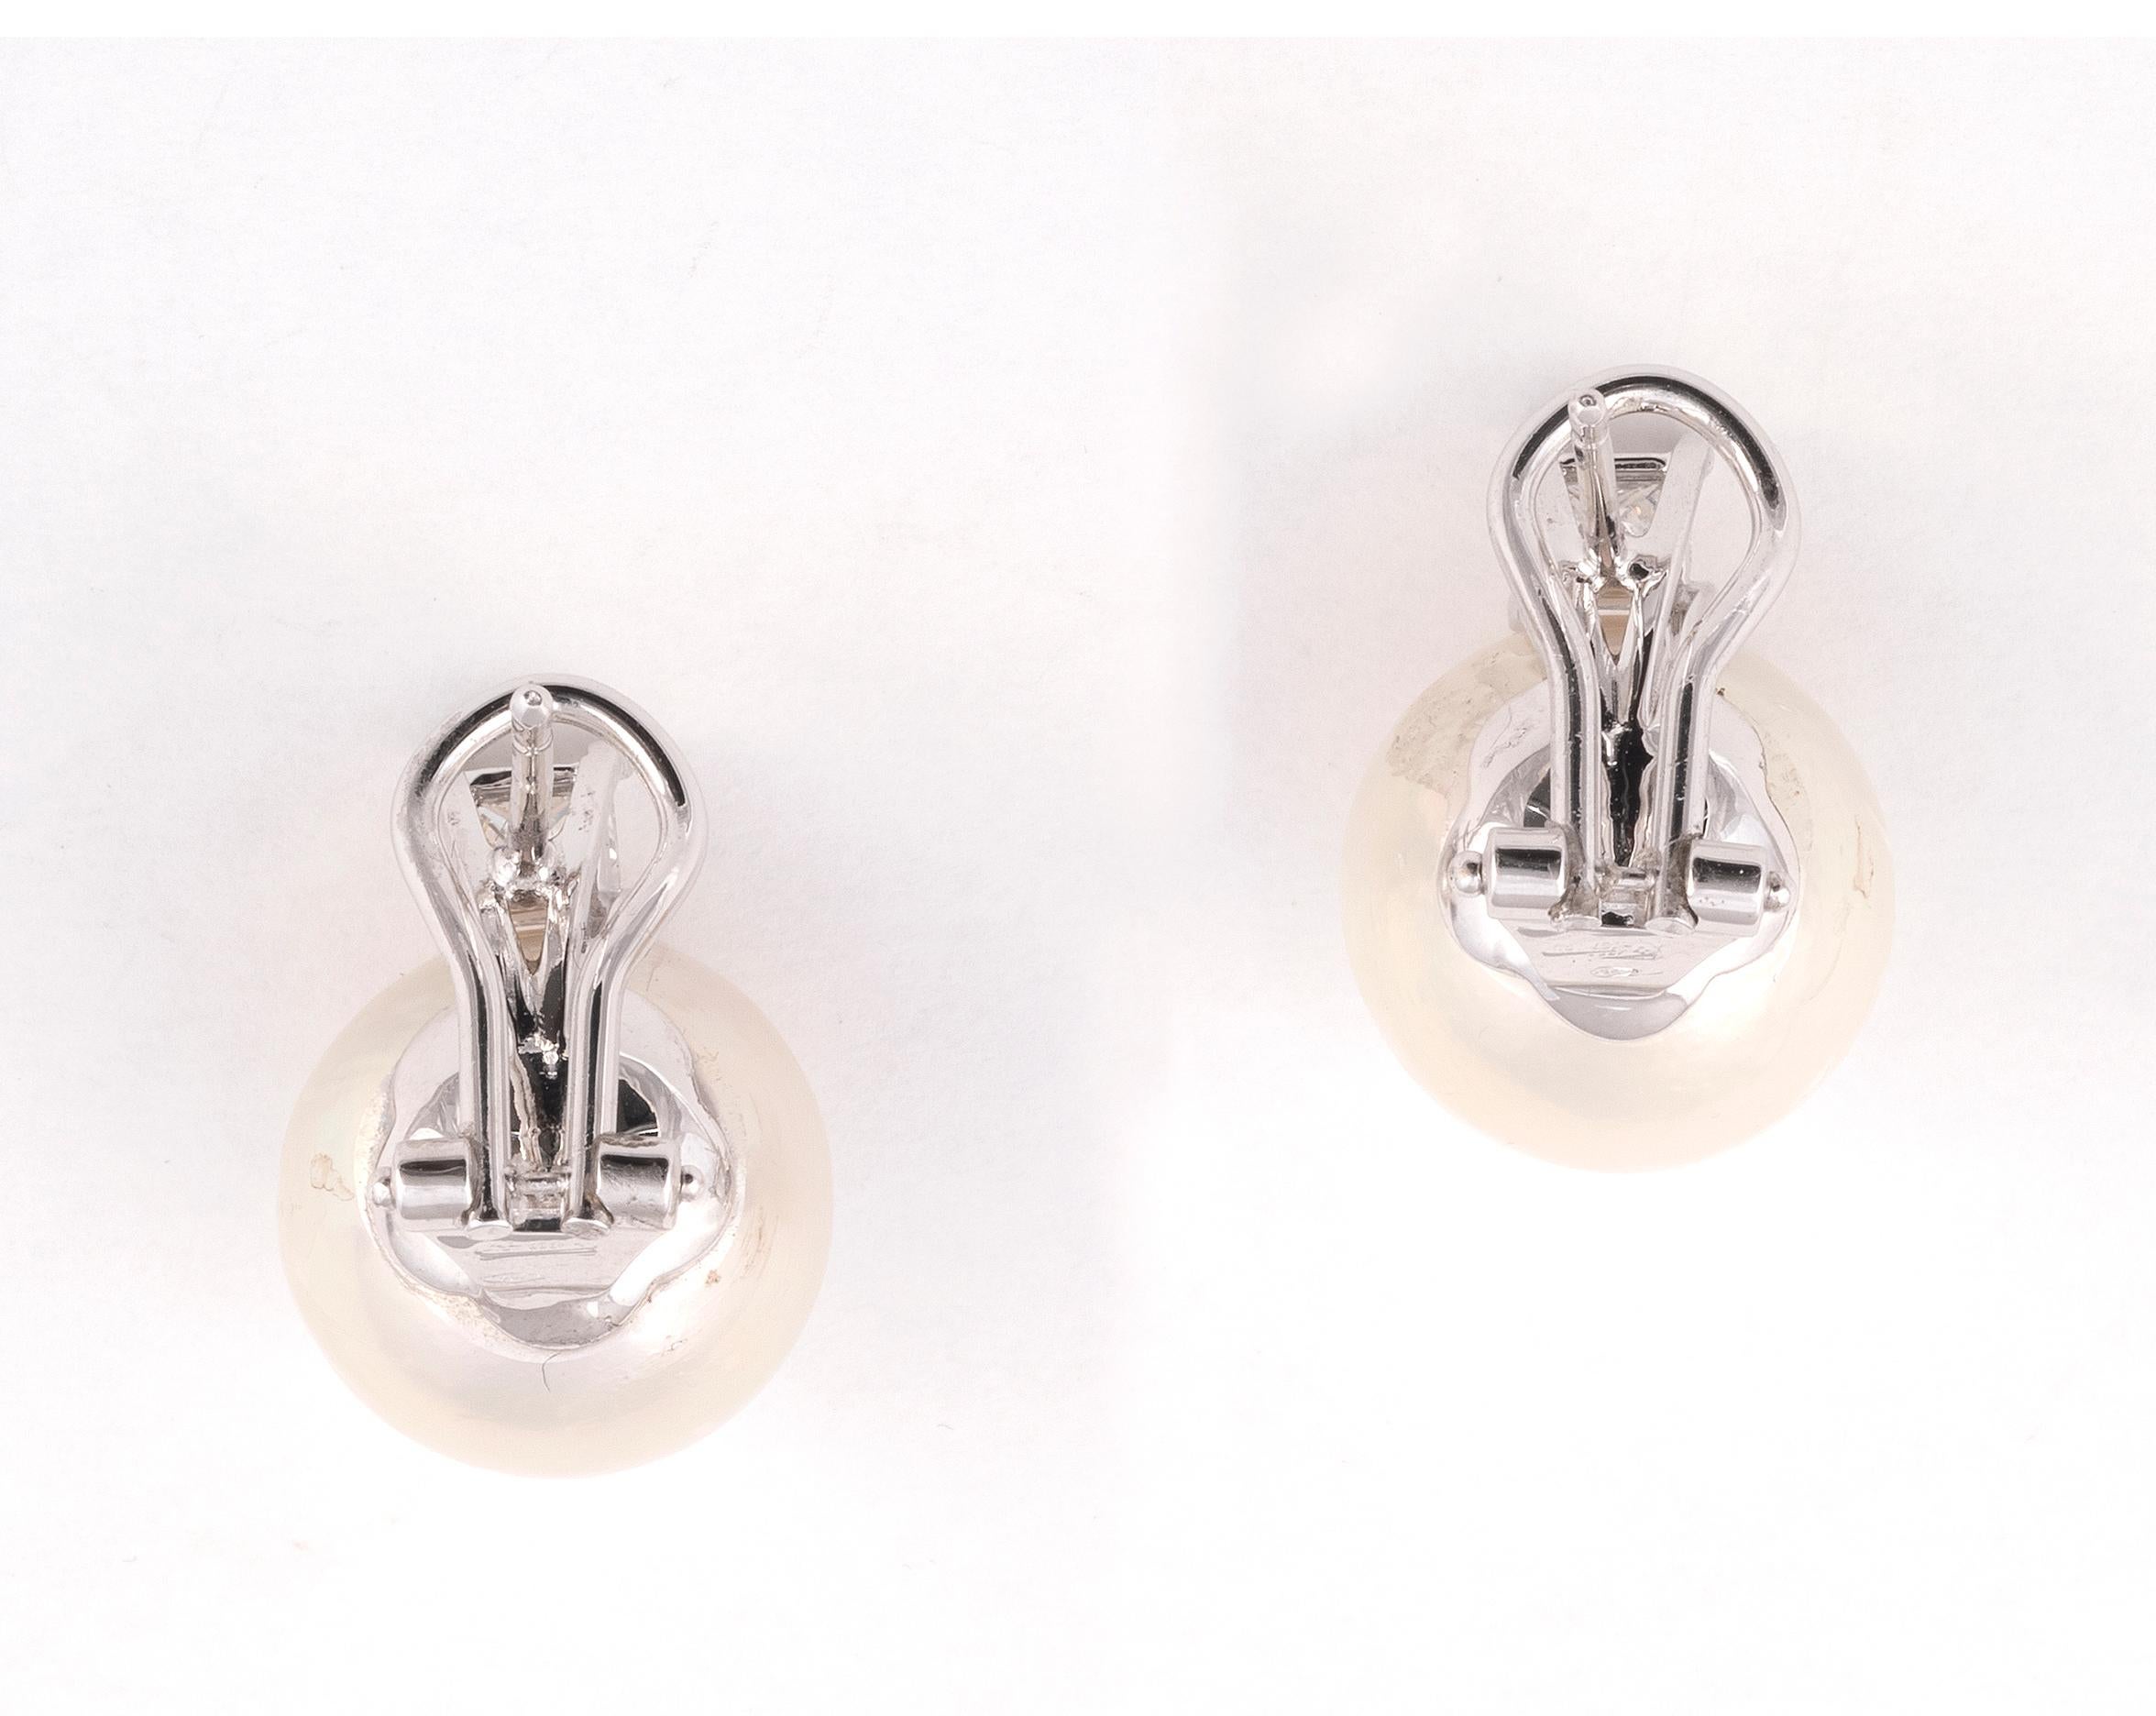 les perles blanches de 14 mm surmontées de diamants taillés en brillant, diamants d'environ 0,45 ct au total.

